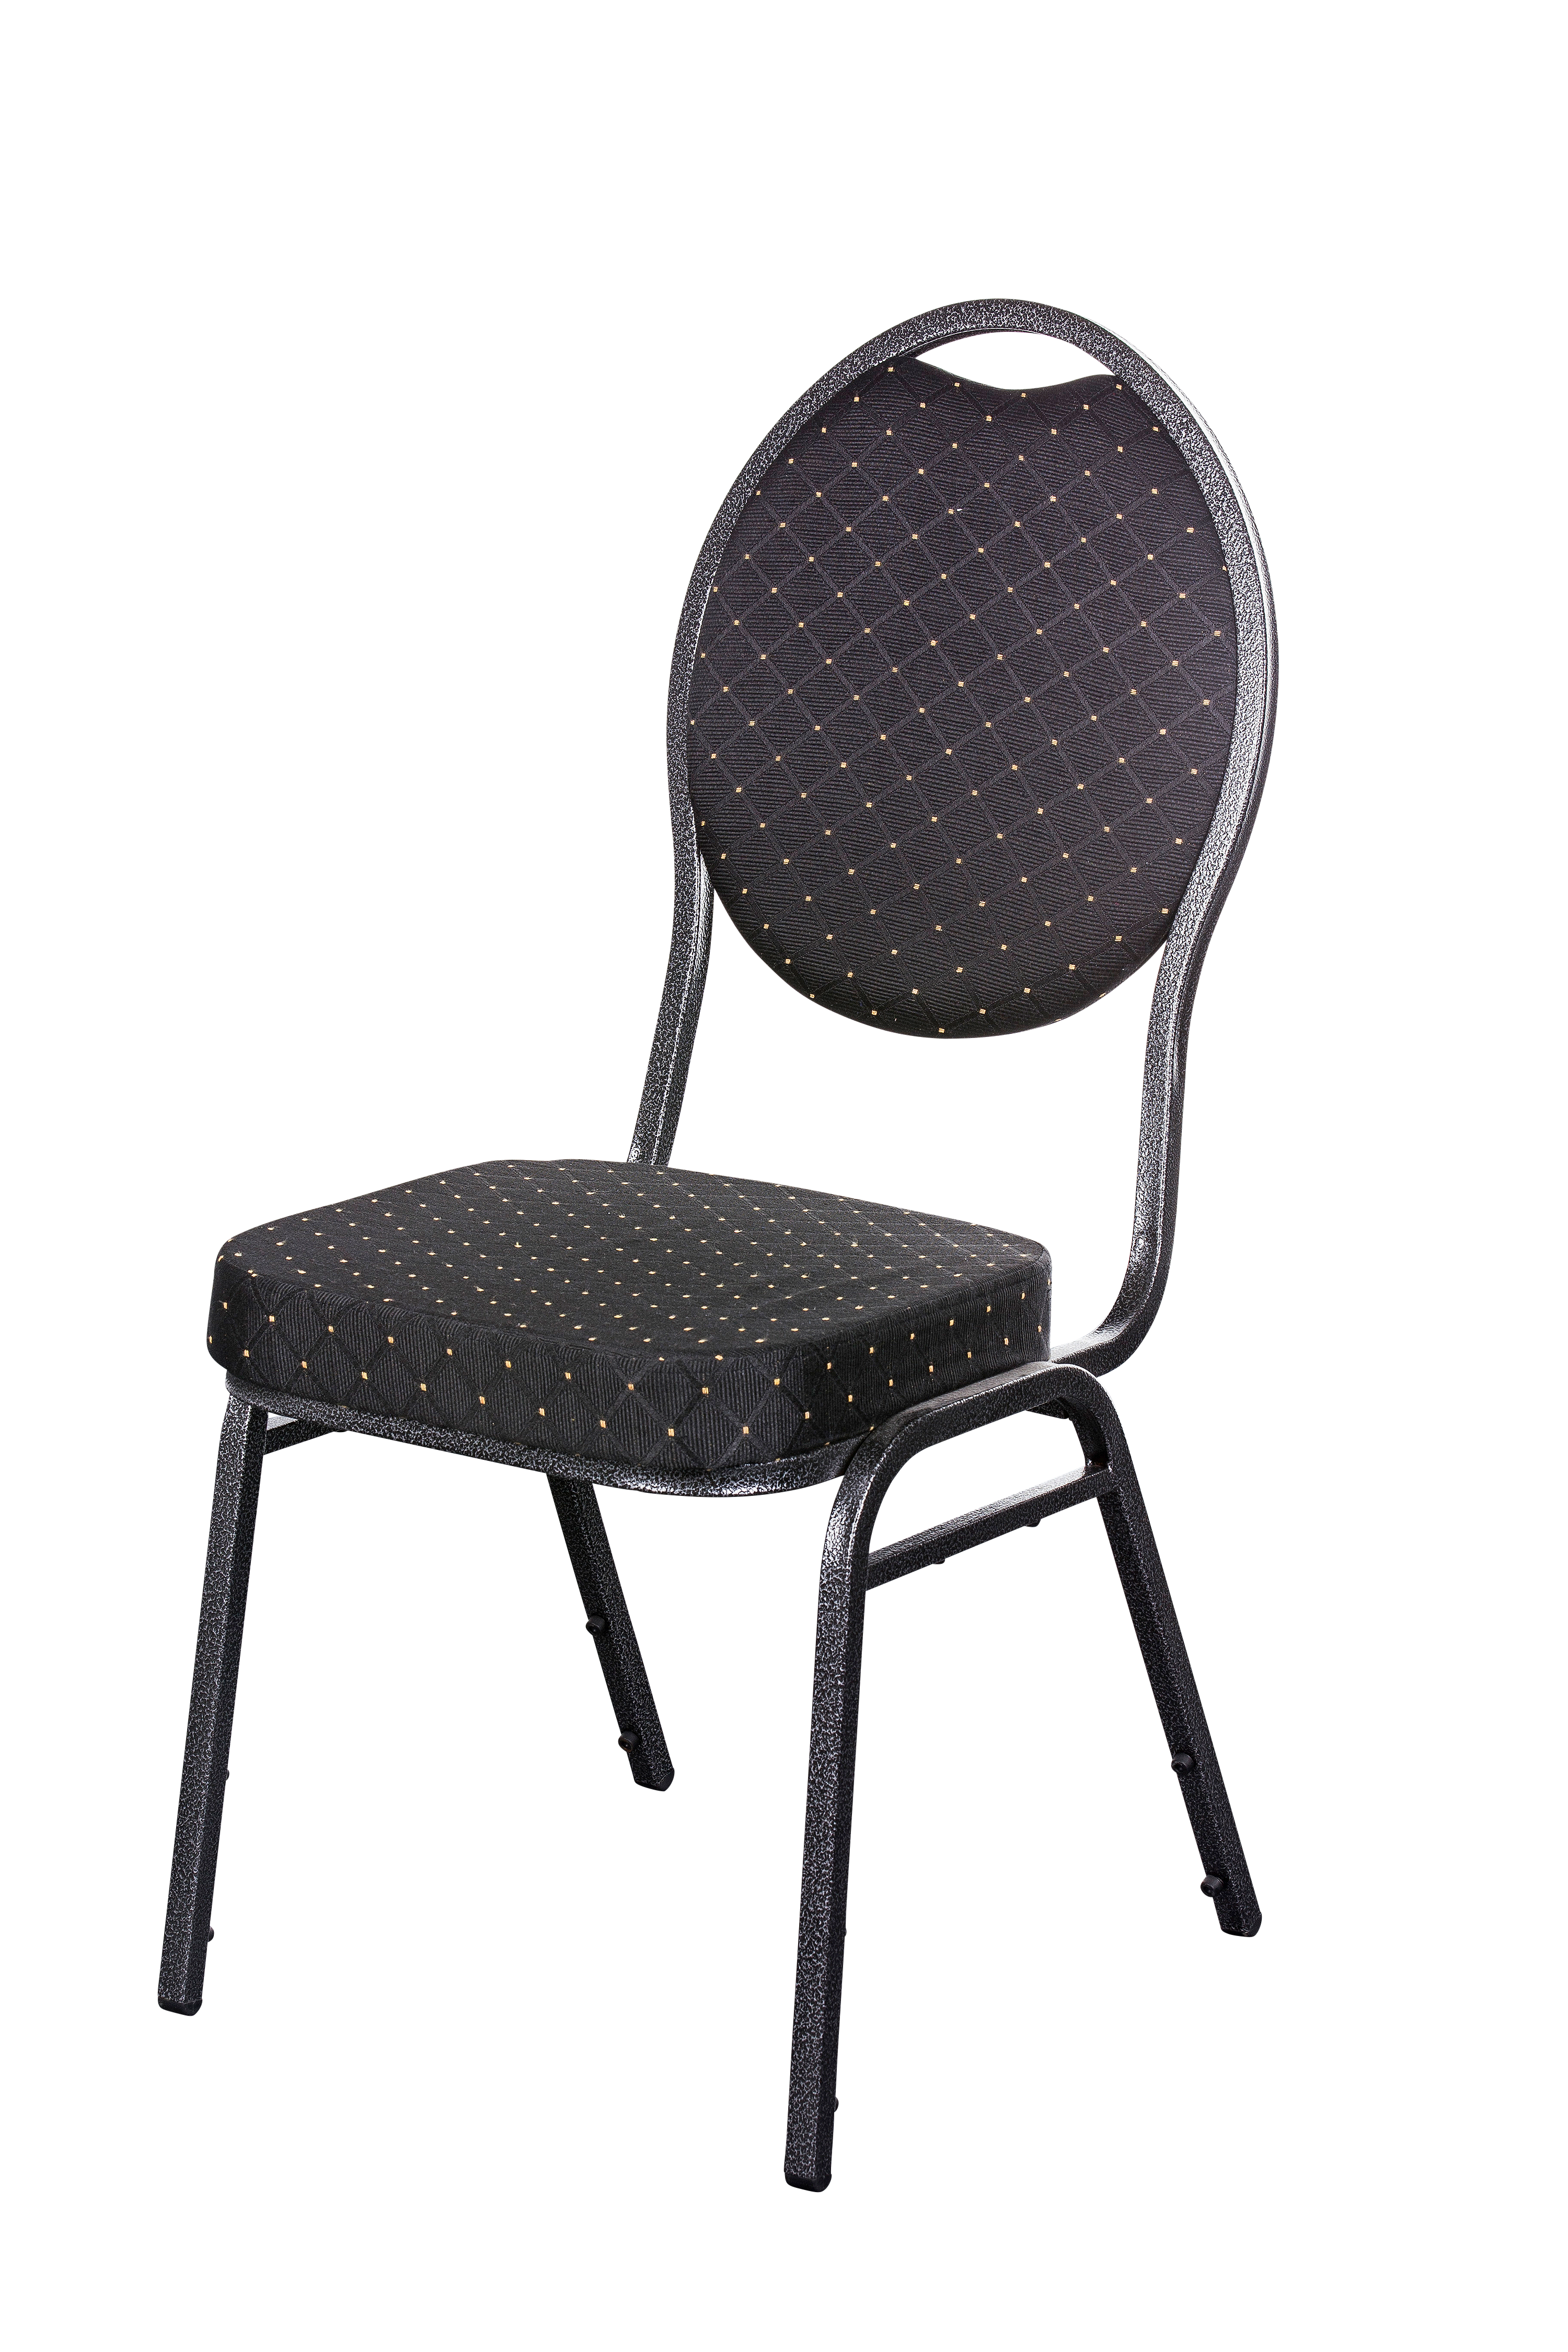 Krzesło sztaplowane Berlin de Luxe firmy Thronstuhl